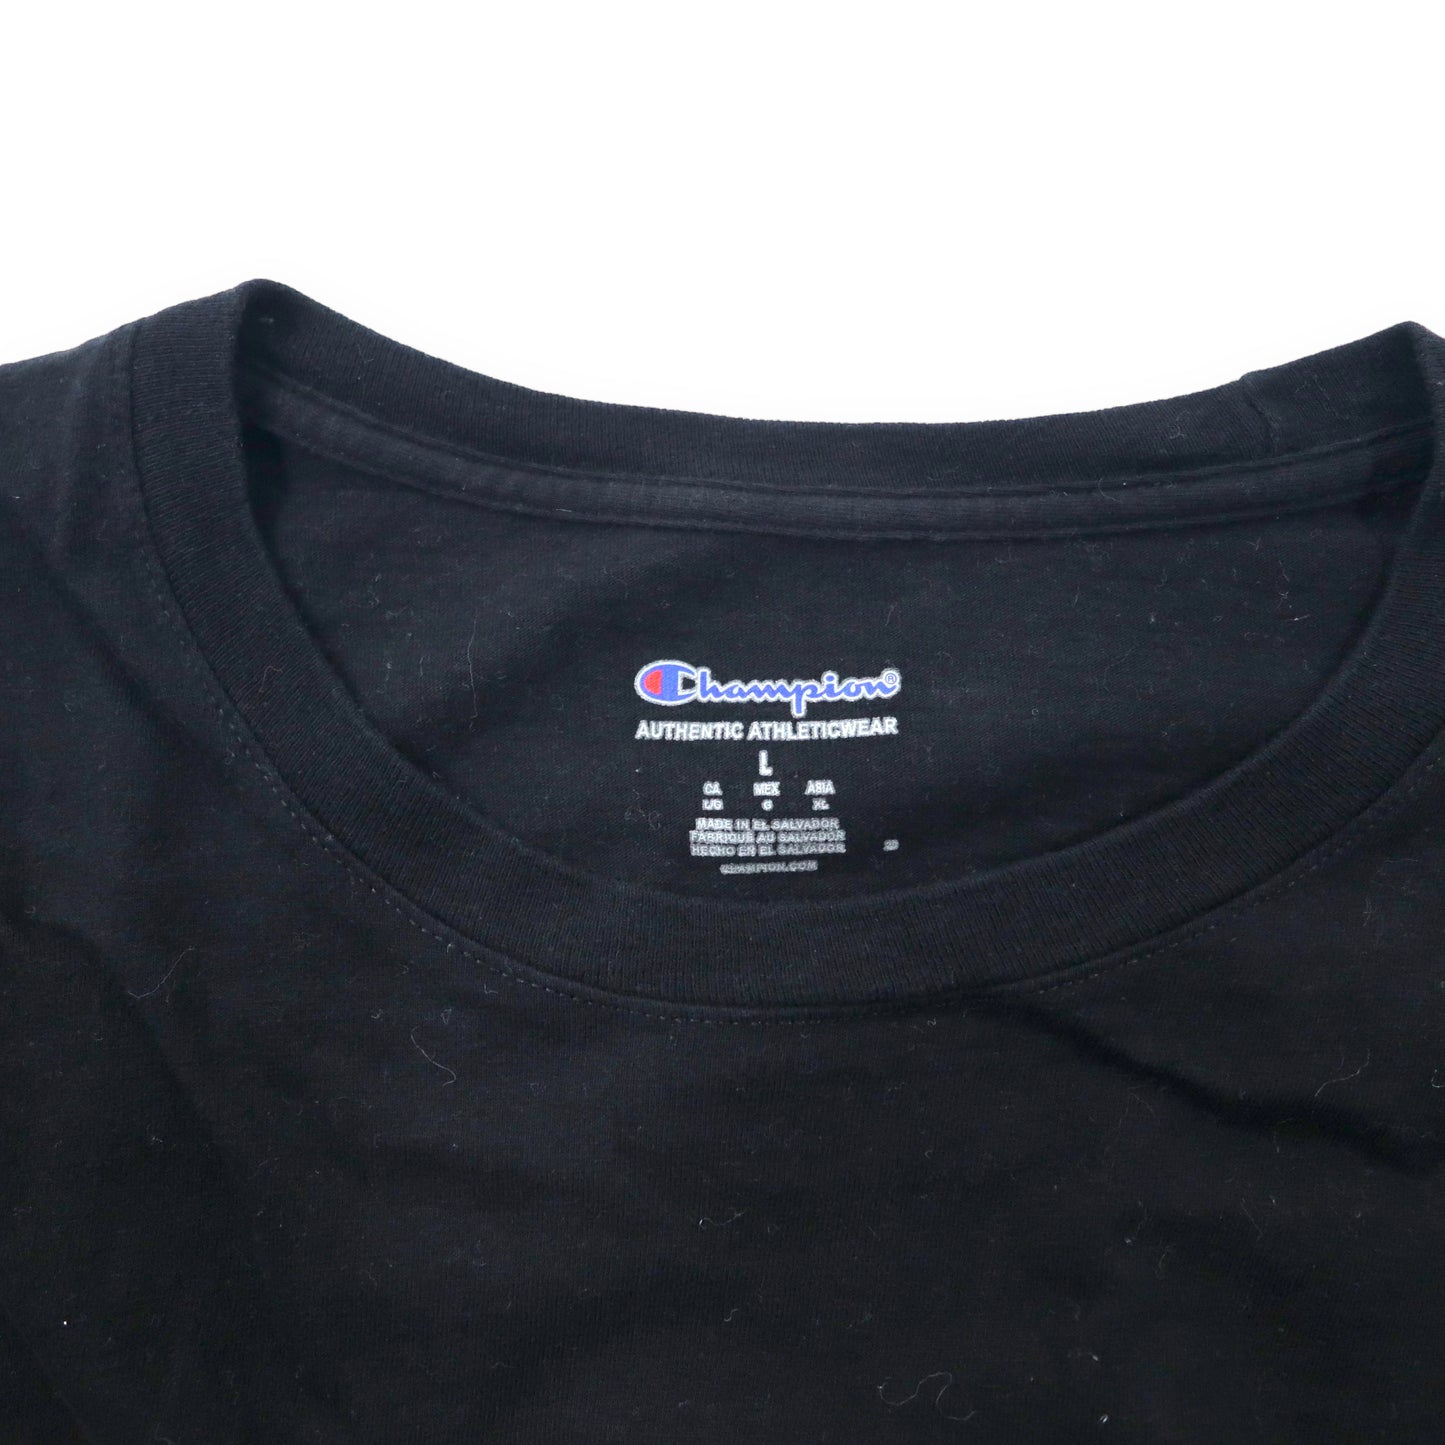 Champion スクリプトロゴ プリントTシャツ XL ブラック コットン ビッグサイズ